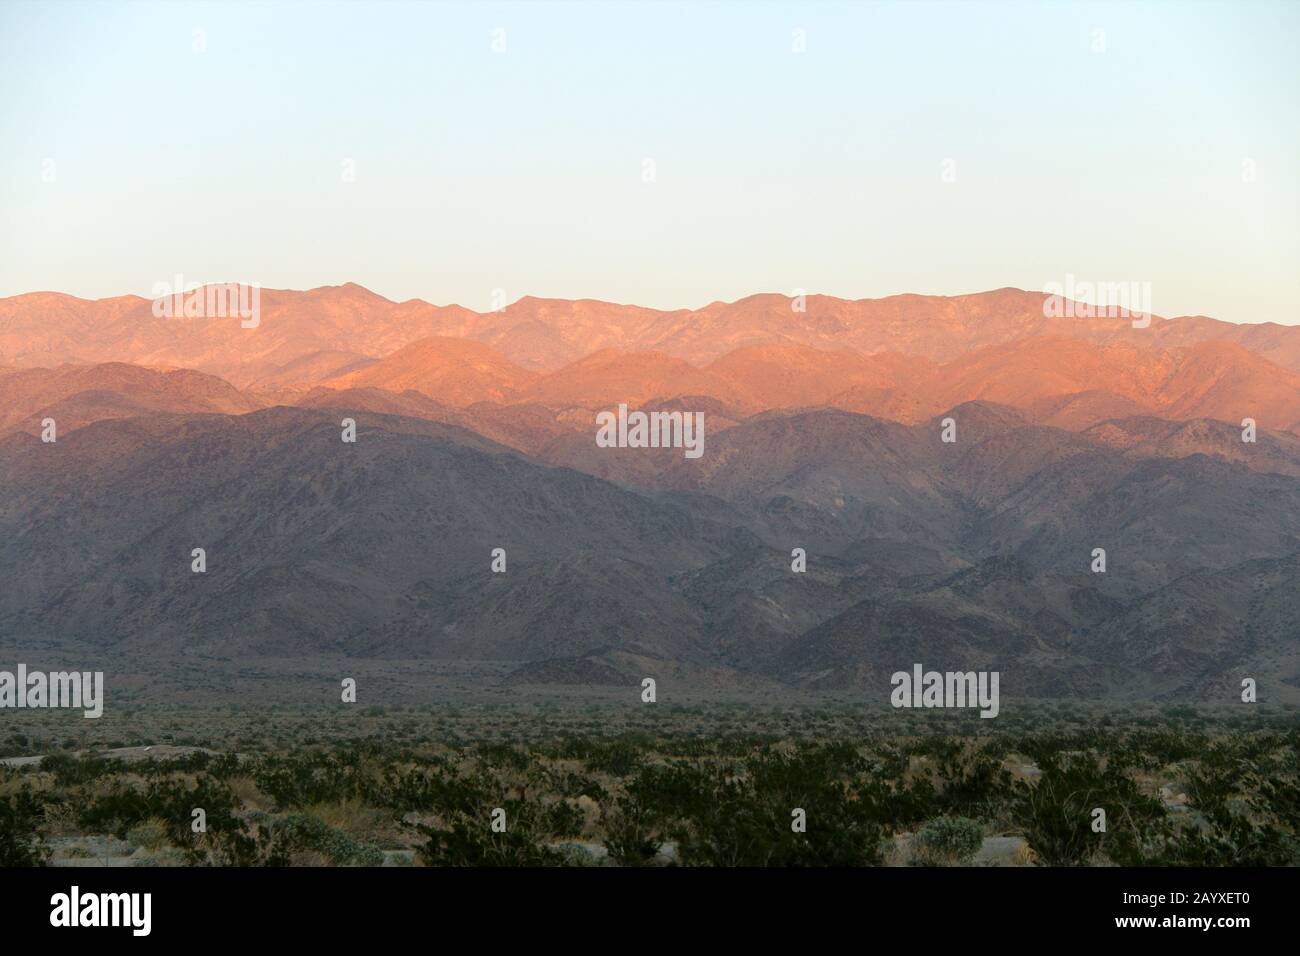 un coucher de soleil contre les montagnes du désert avec des ombres profondes lumineuses Banque D'Images